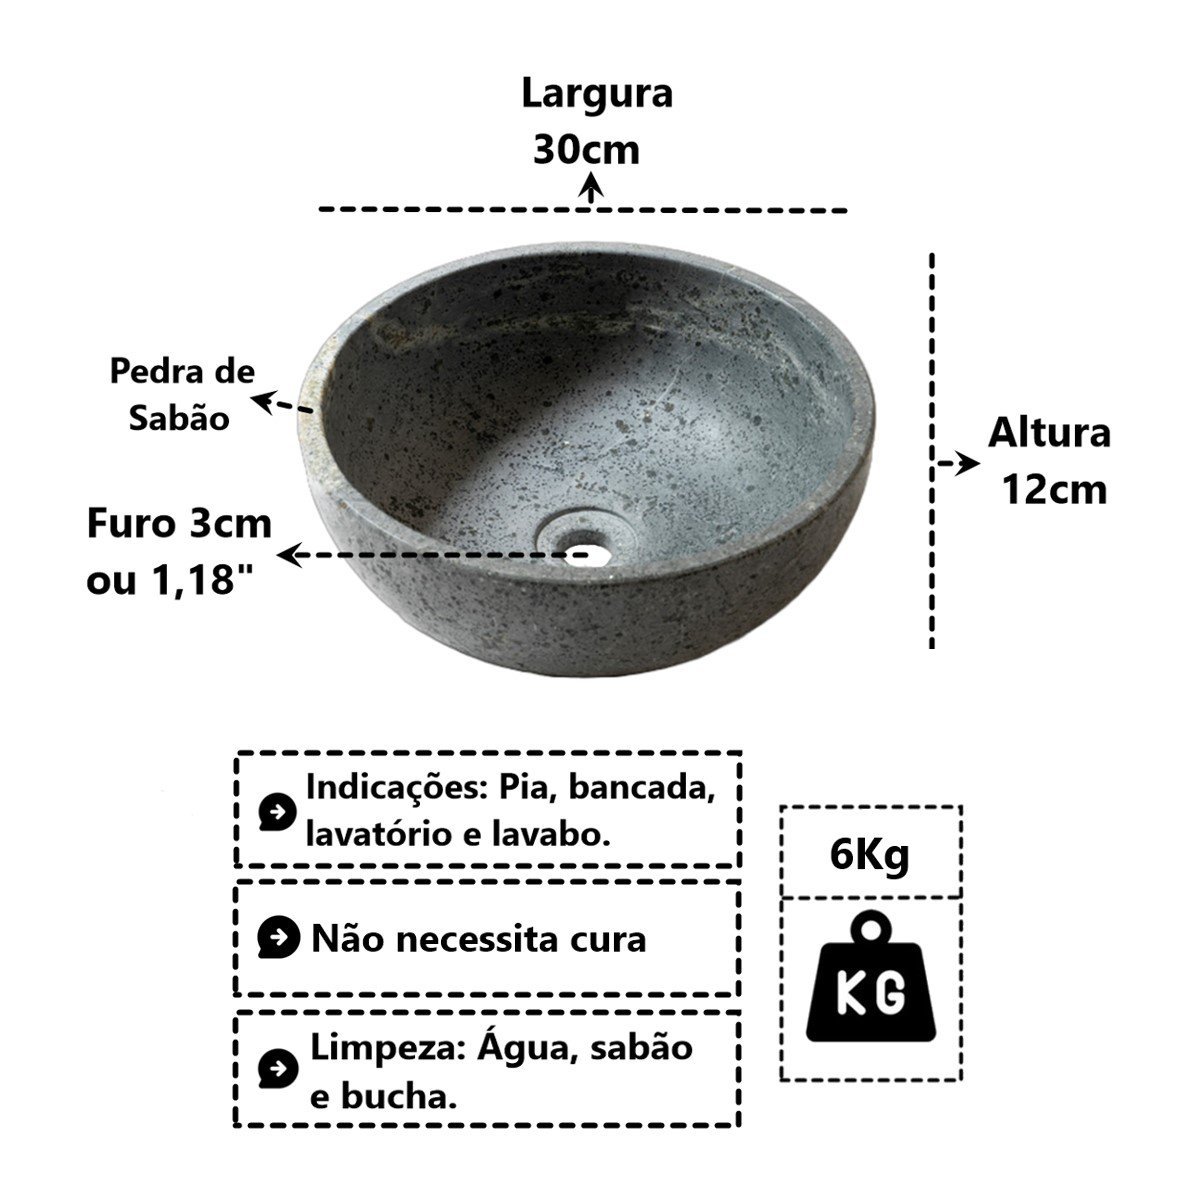 Cuba Bojo Pedra de Sabão Pia Bancada Lavabo Lavatório 30cm Industria São Jose AF1003INDSJ - 3